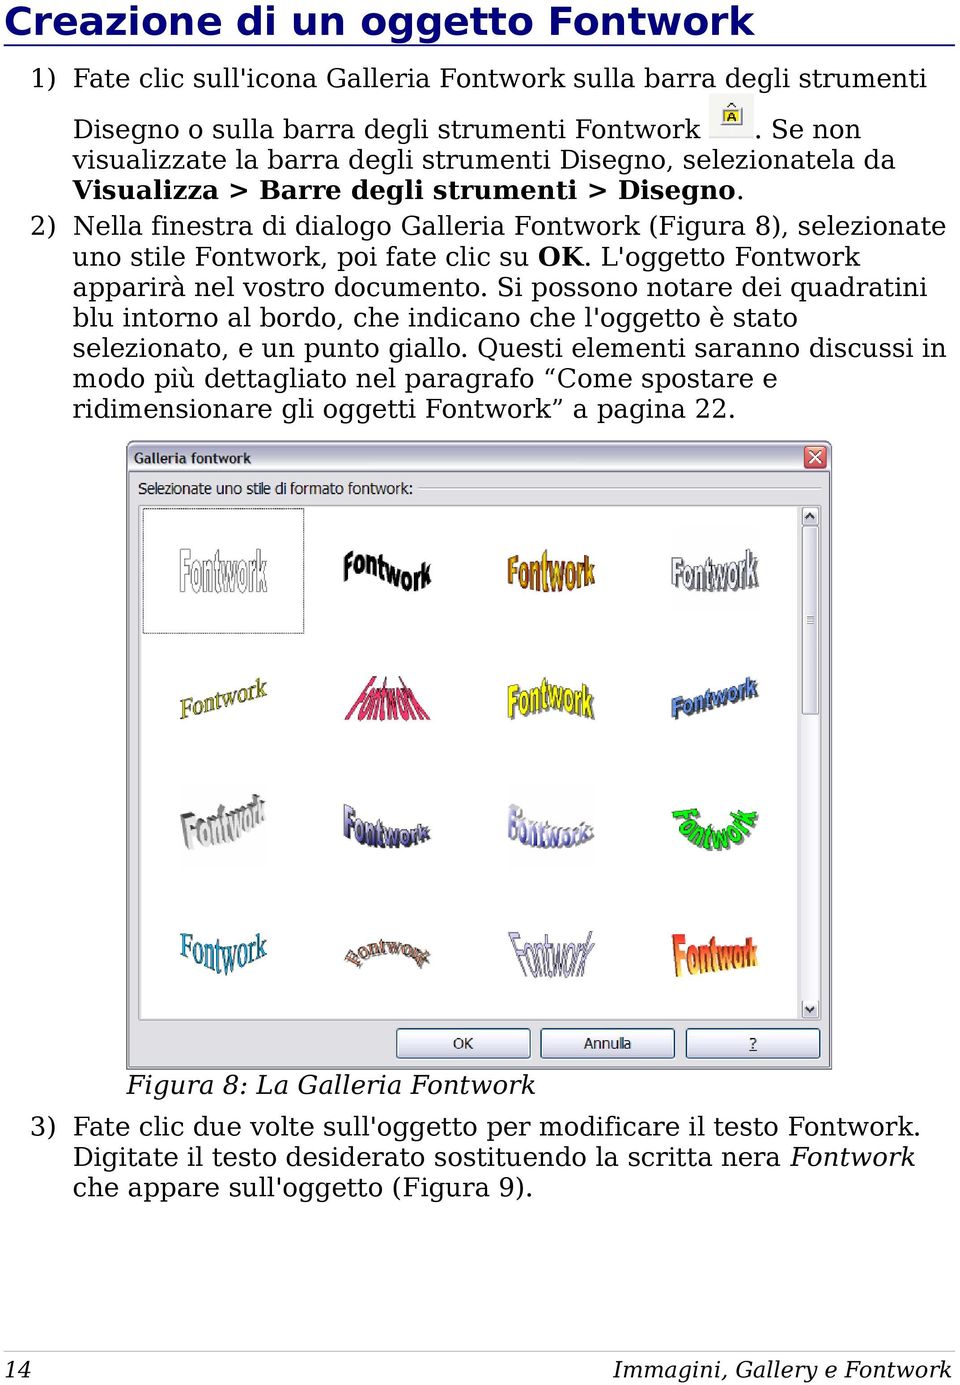 2) Nella finestra di dialogo Galleria Fontwork (Figura 8), selezionate uno stile Fontwork, poi fate clic su OK. L'oggetto Fontwork apparirà nel vostro documento.